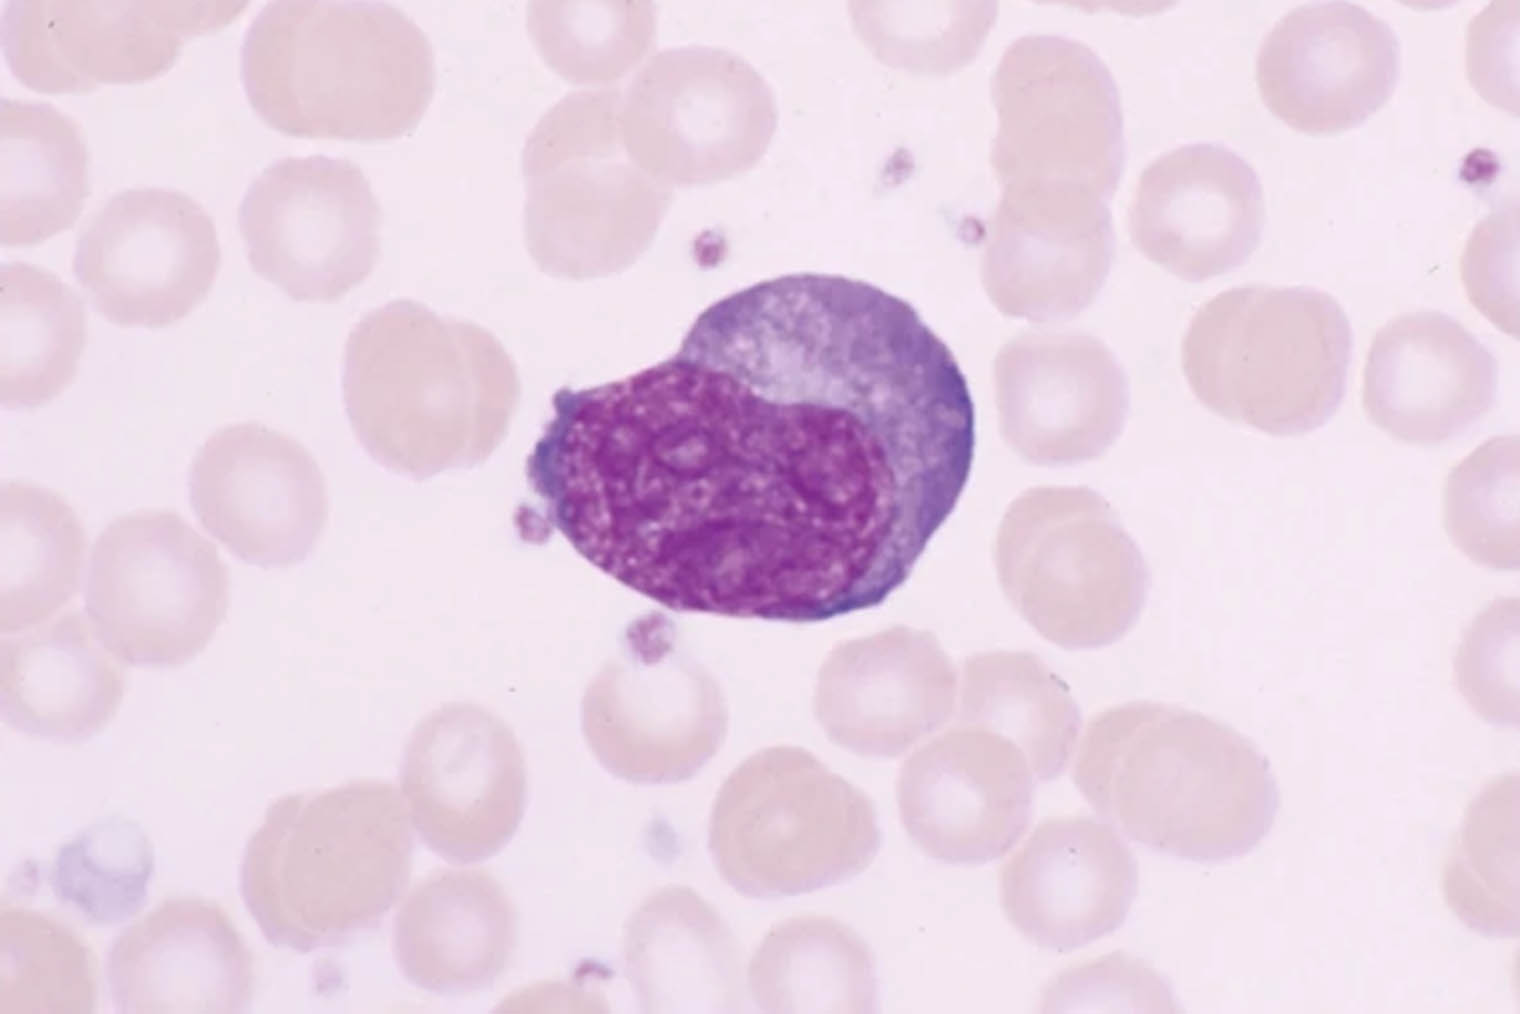 При моноцитарном эрлихиозе в крови появляются атипичные лимфоциты. Источник: nature.com